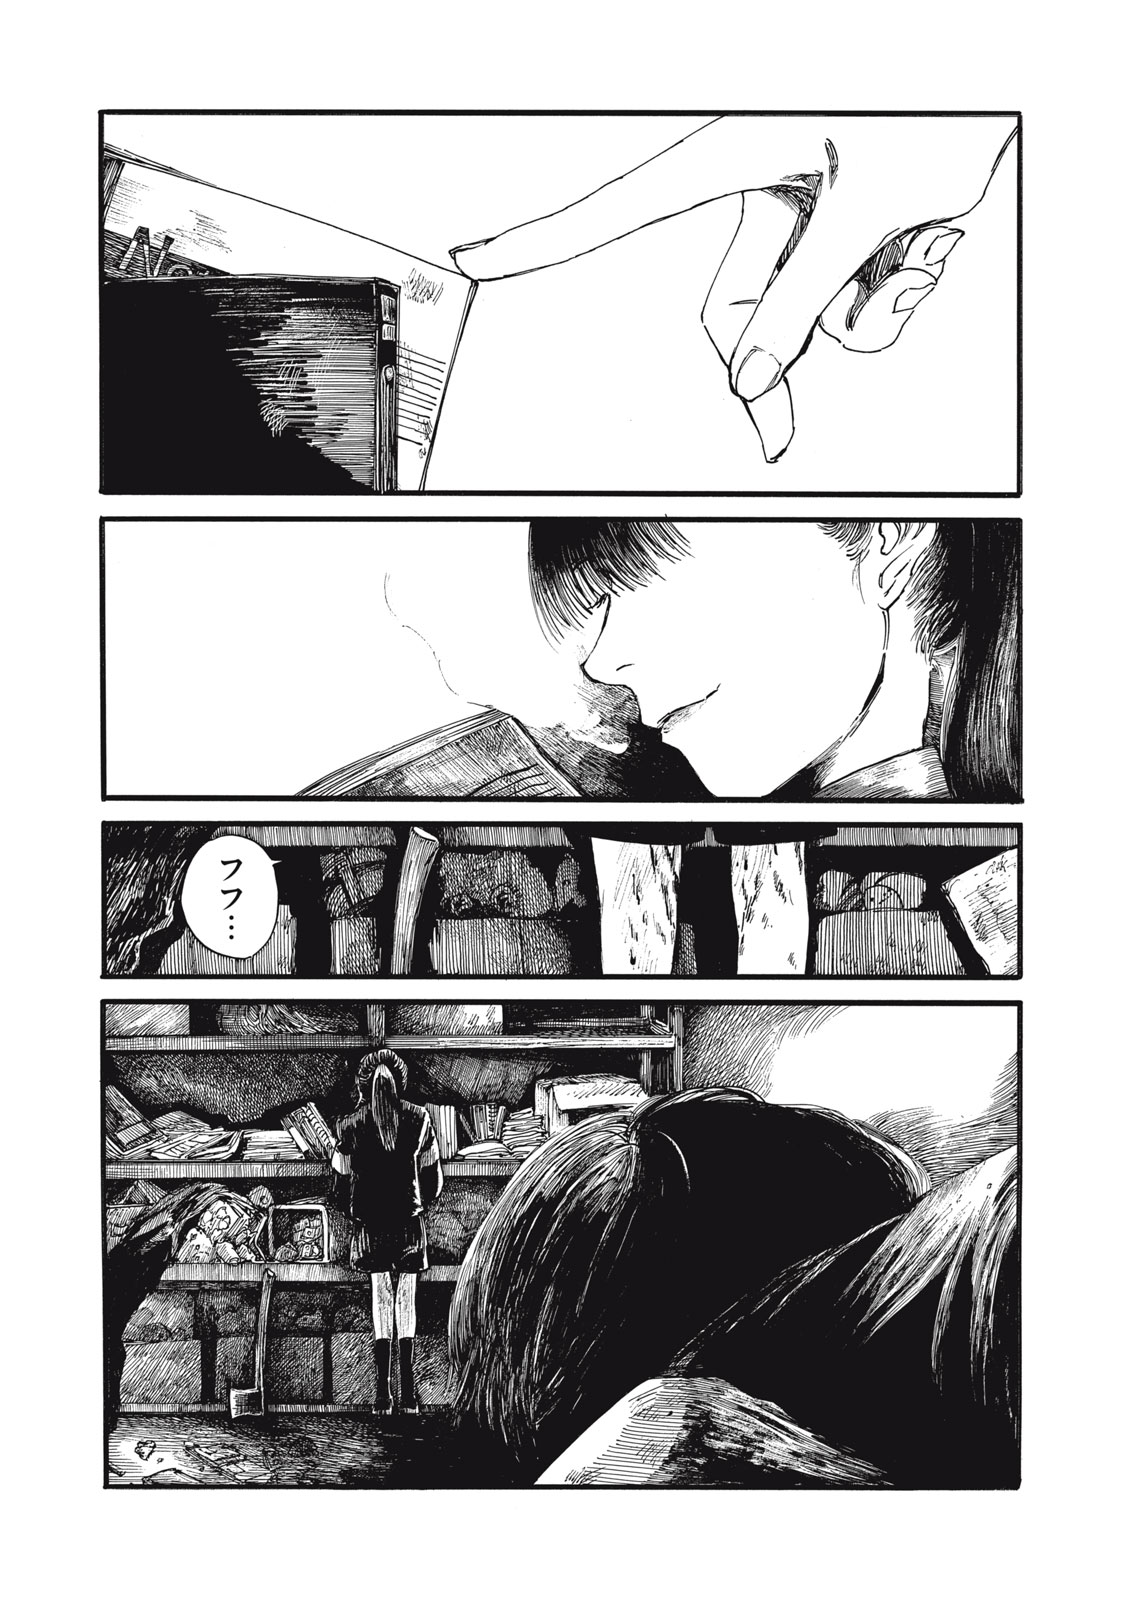 Watashi no Hara no Naka no Bakemono - Chapter 26 - Page 1